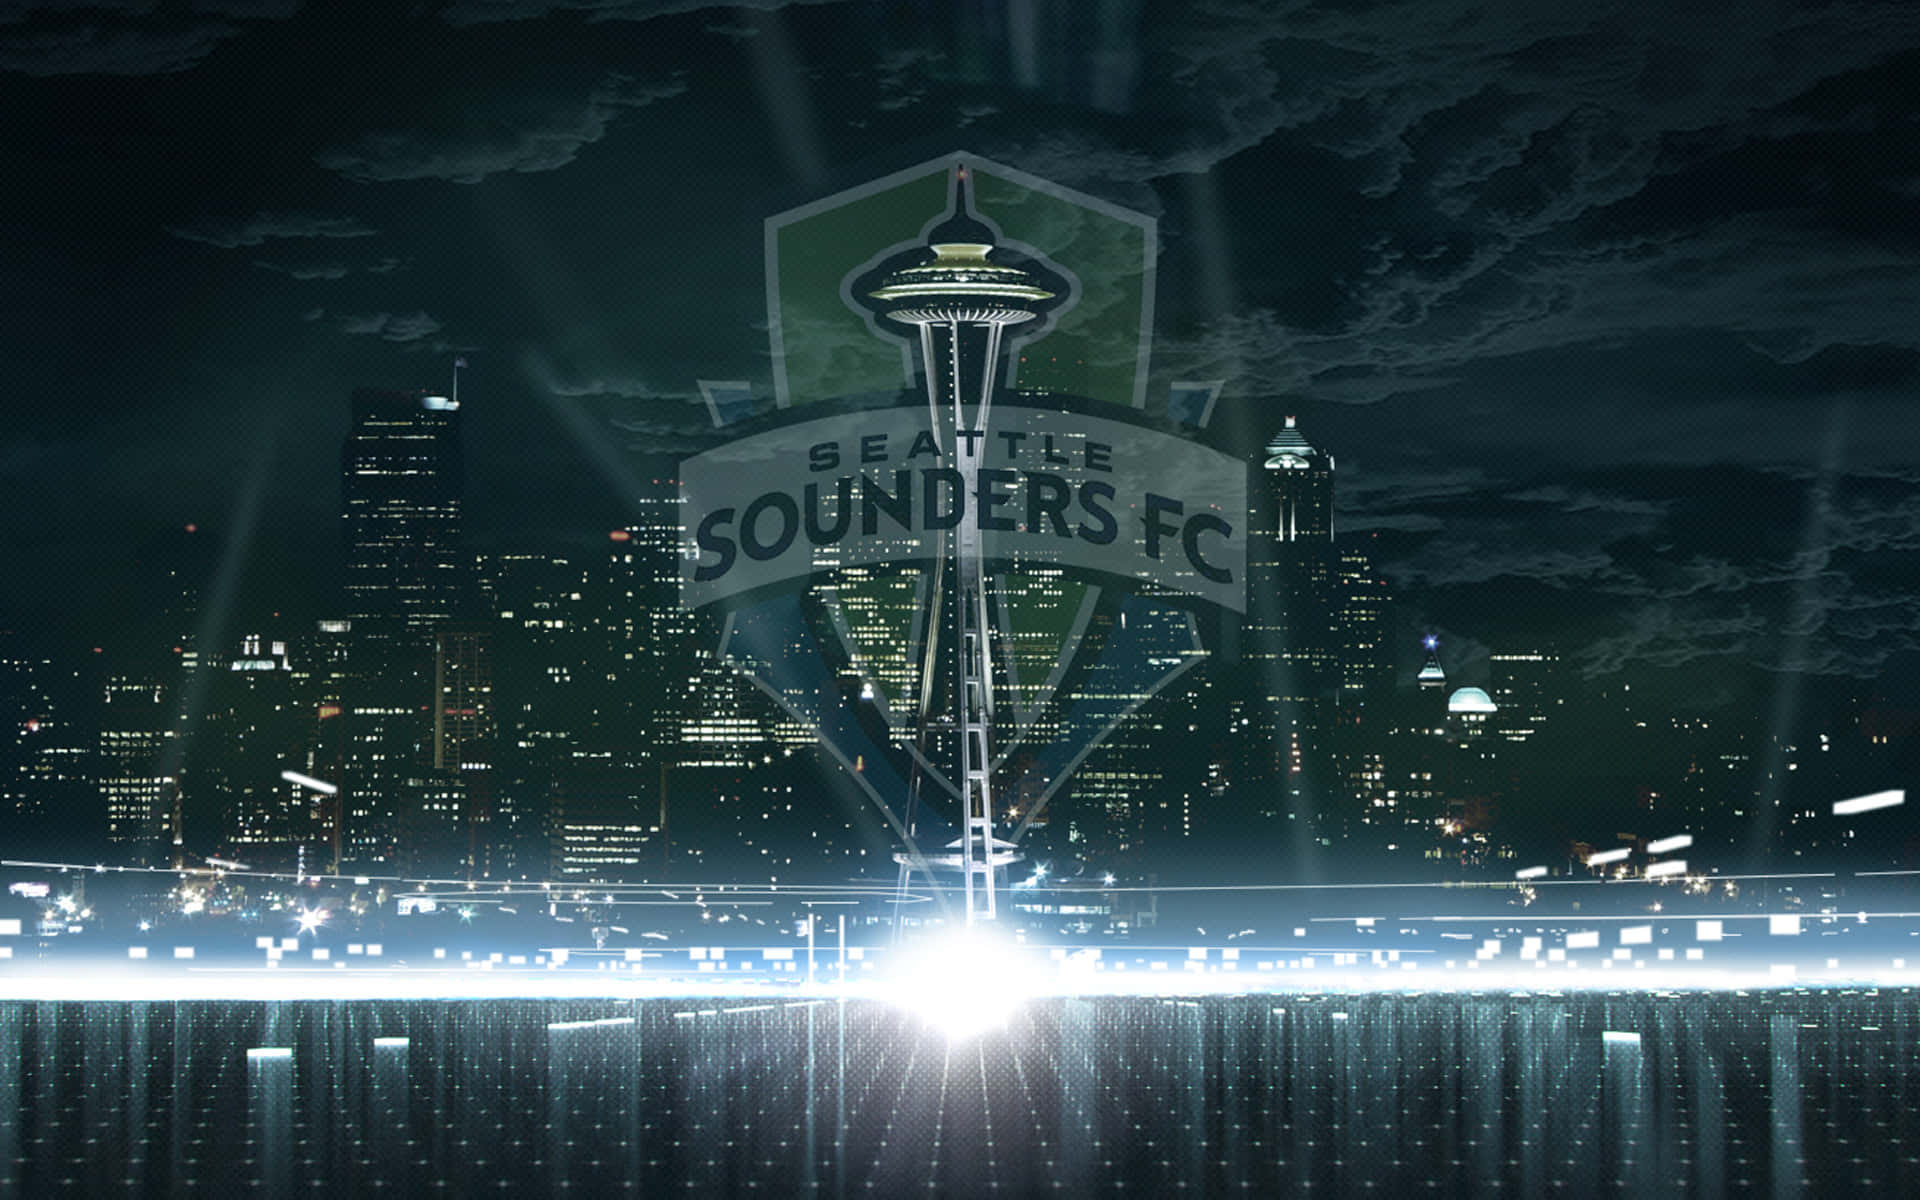 Seattlesounders Fc Logo Del Team Stilizzato Sfondo